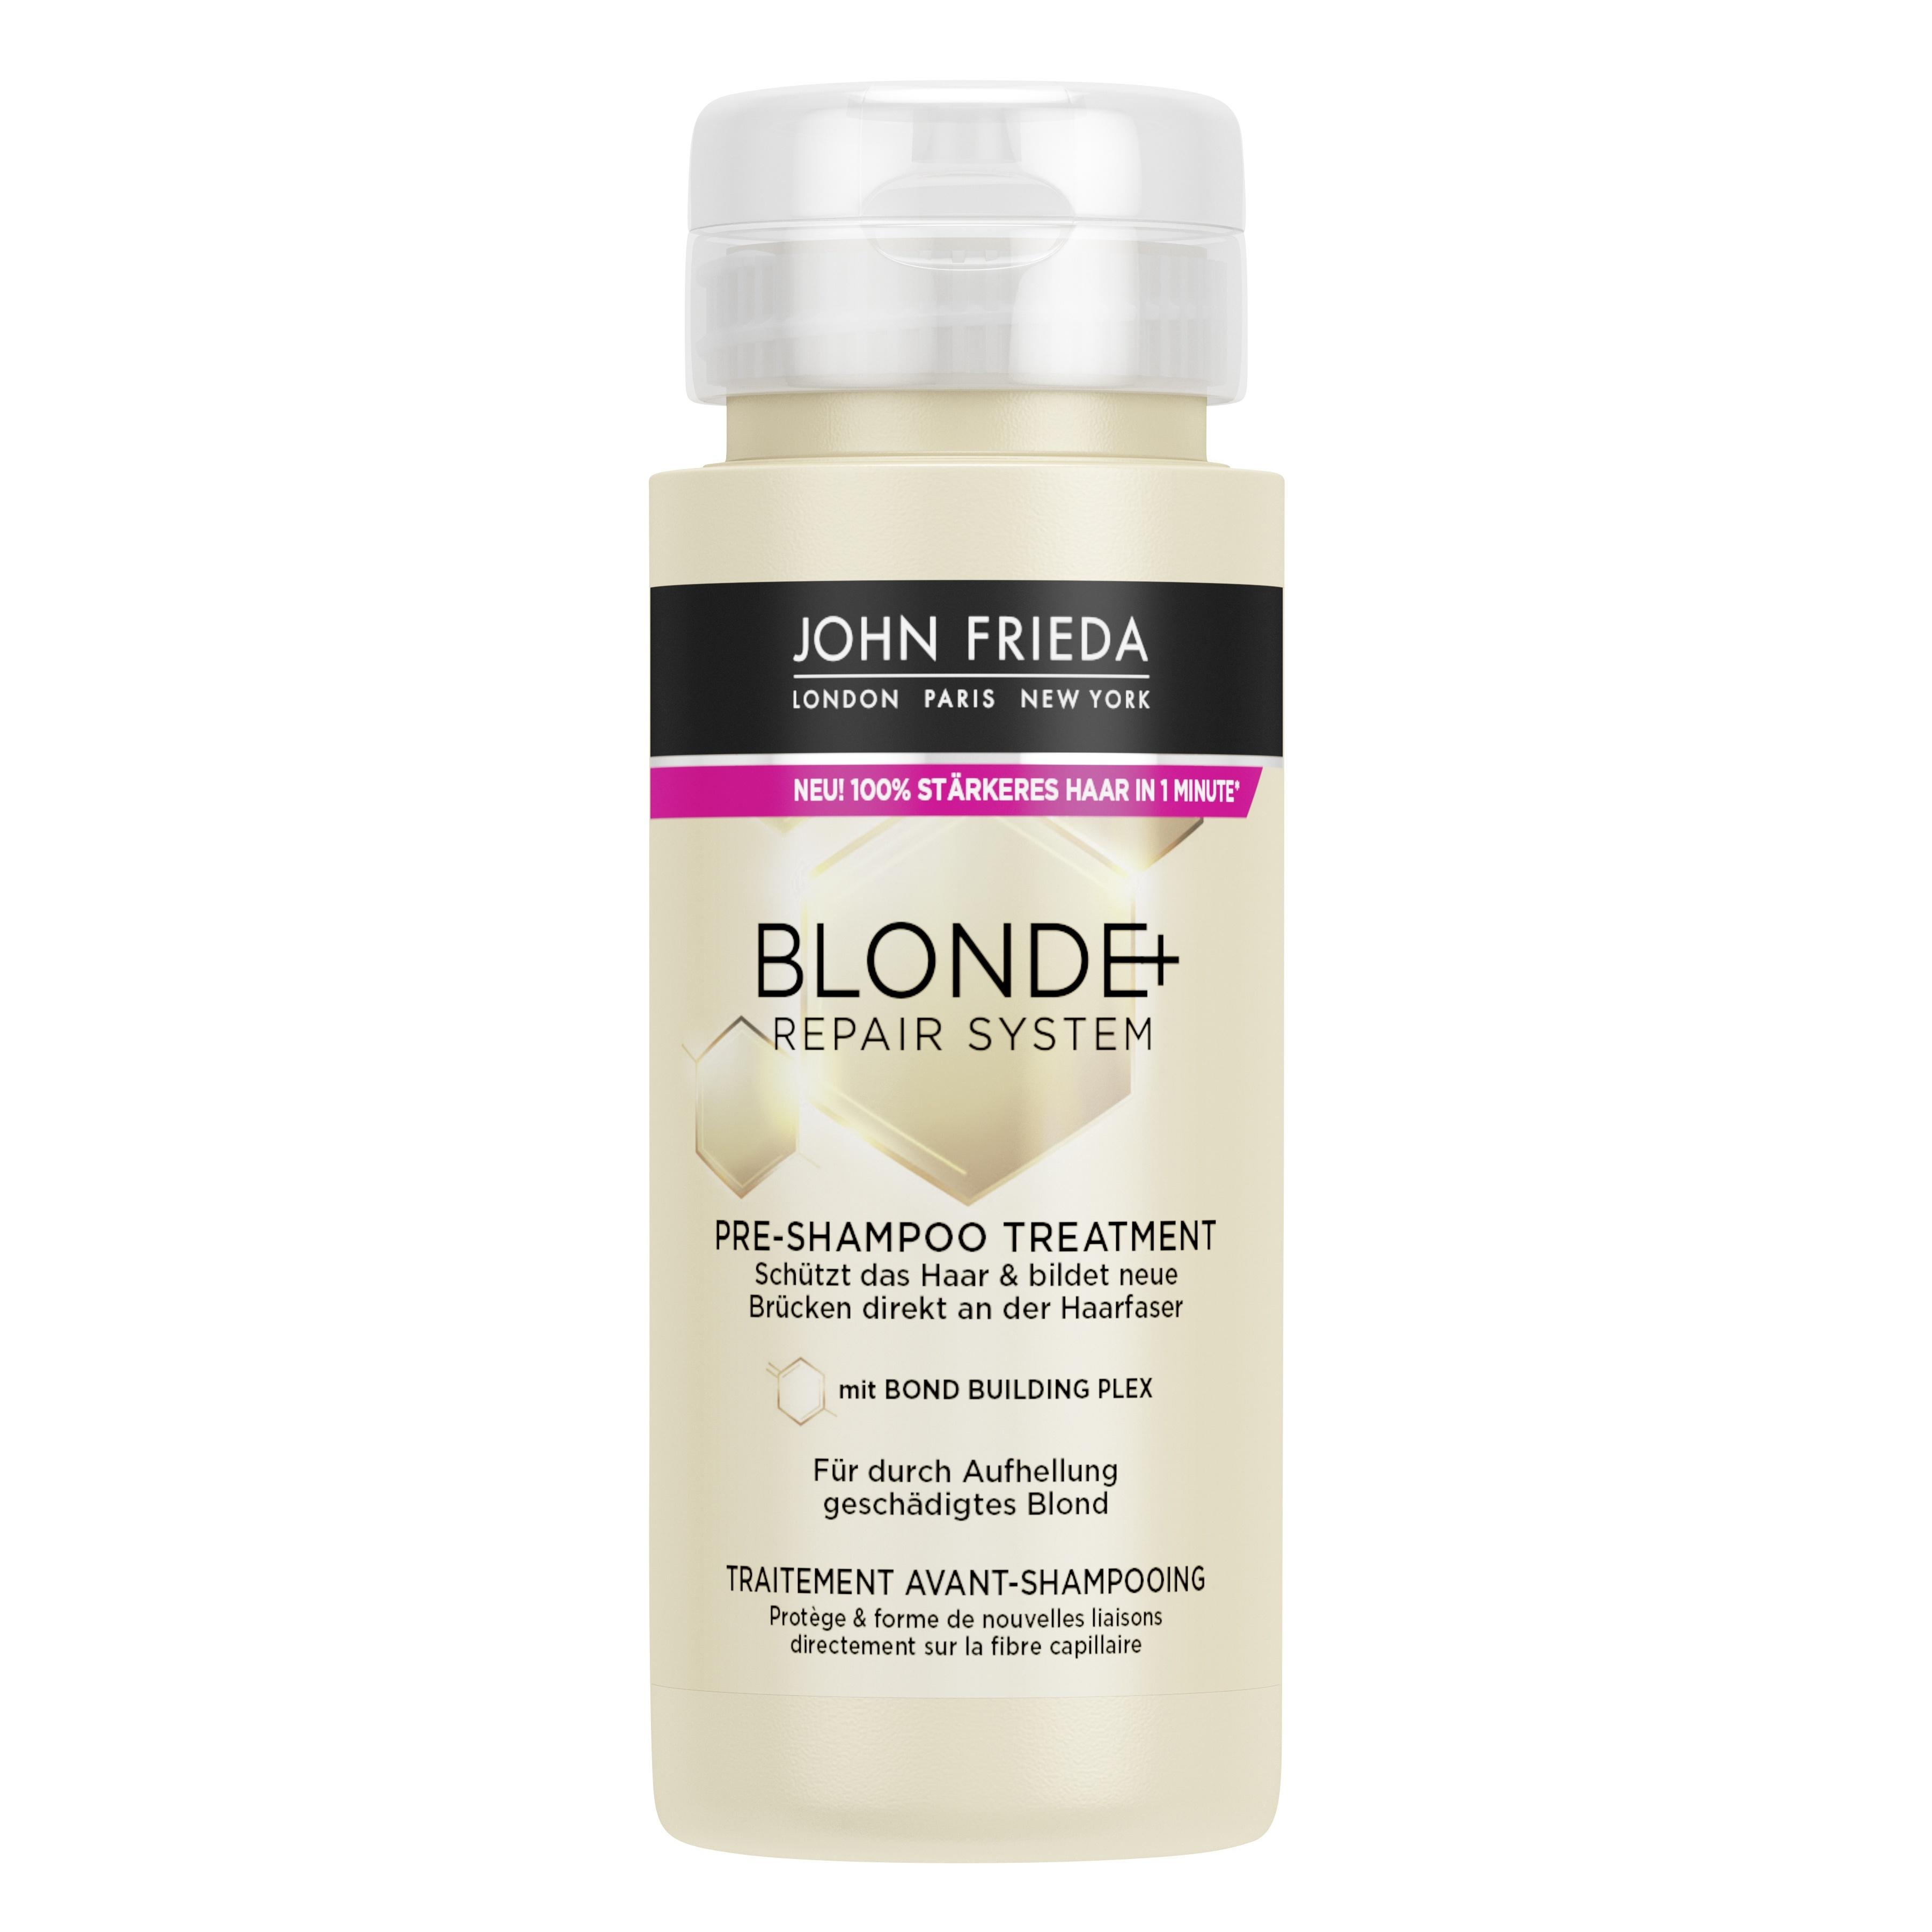 Produktbild von Blonde+ Repair System - Blonde+ Bond Builiding Pre-Shampoo Treatment